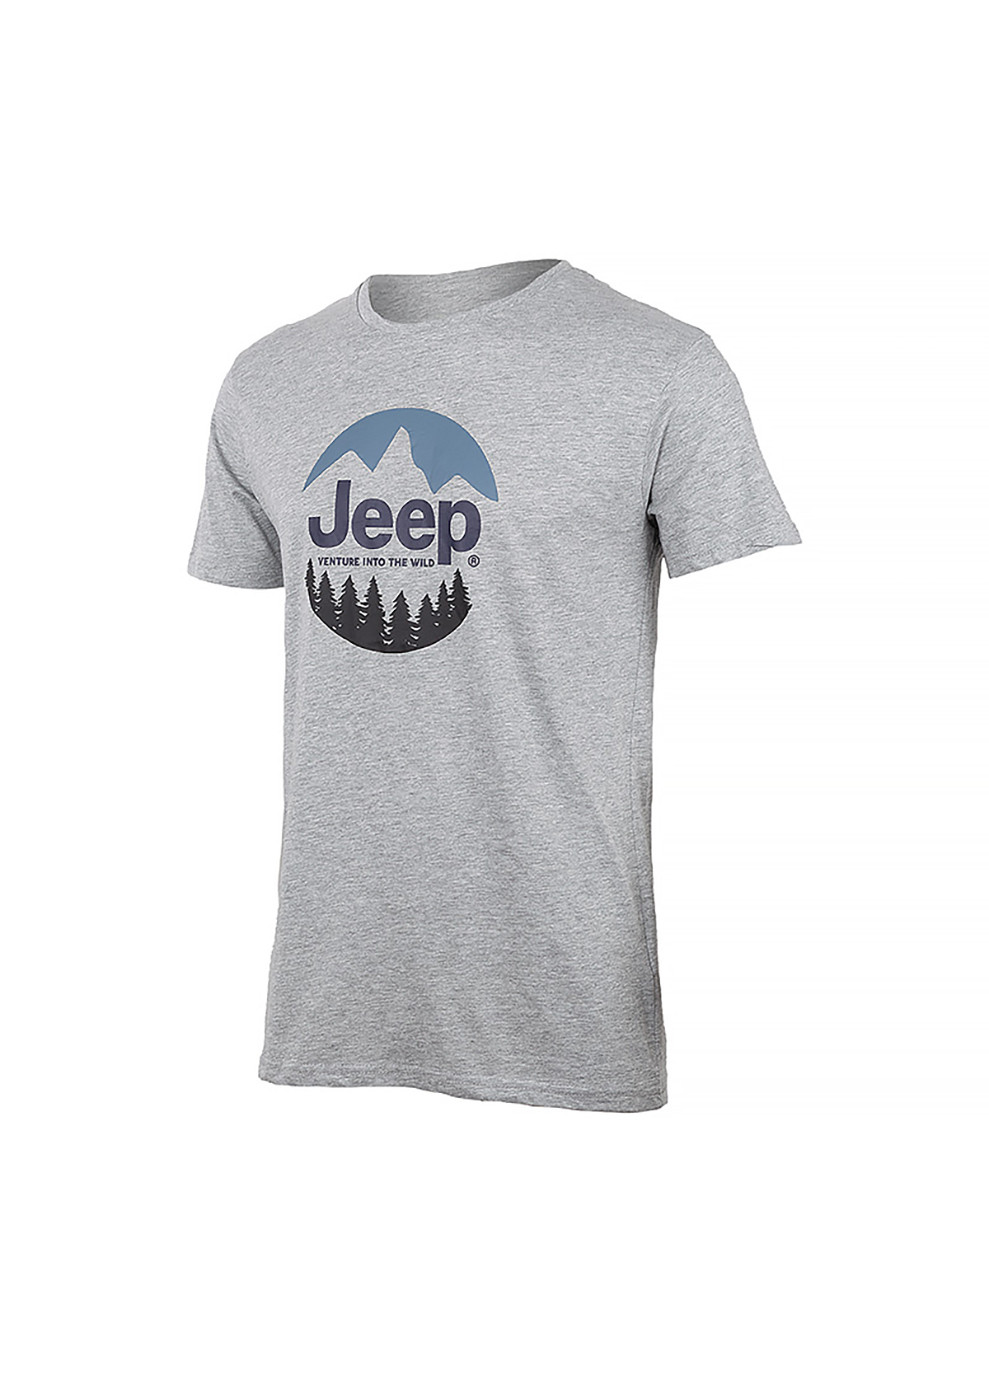 Серая мужская футболка t-shirt the spirit of adventure серый m (o102588-g347 m) Jeep